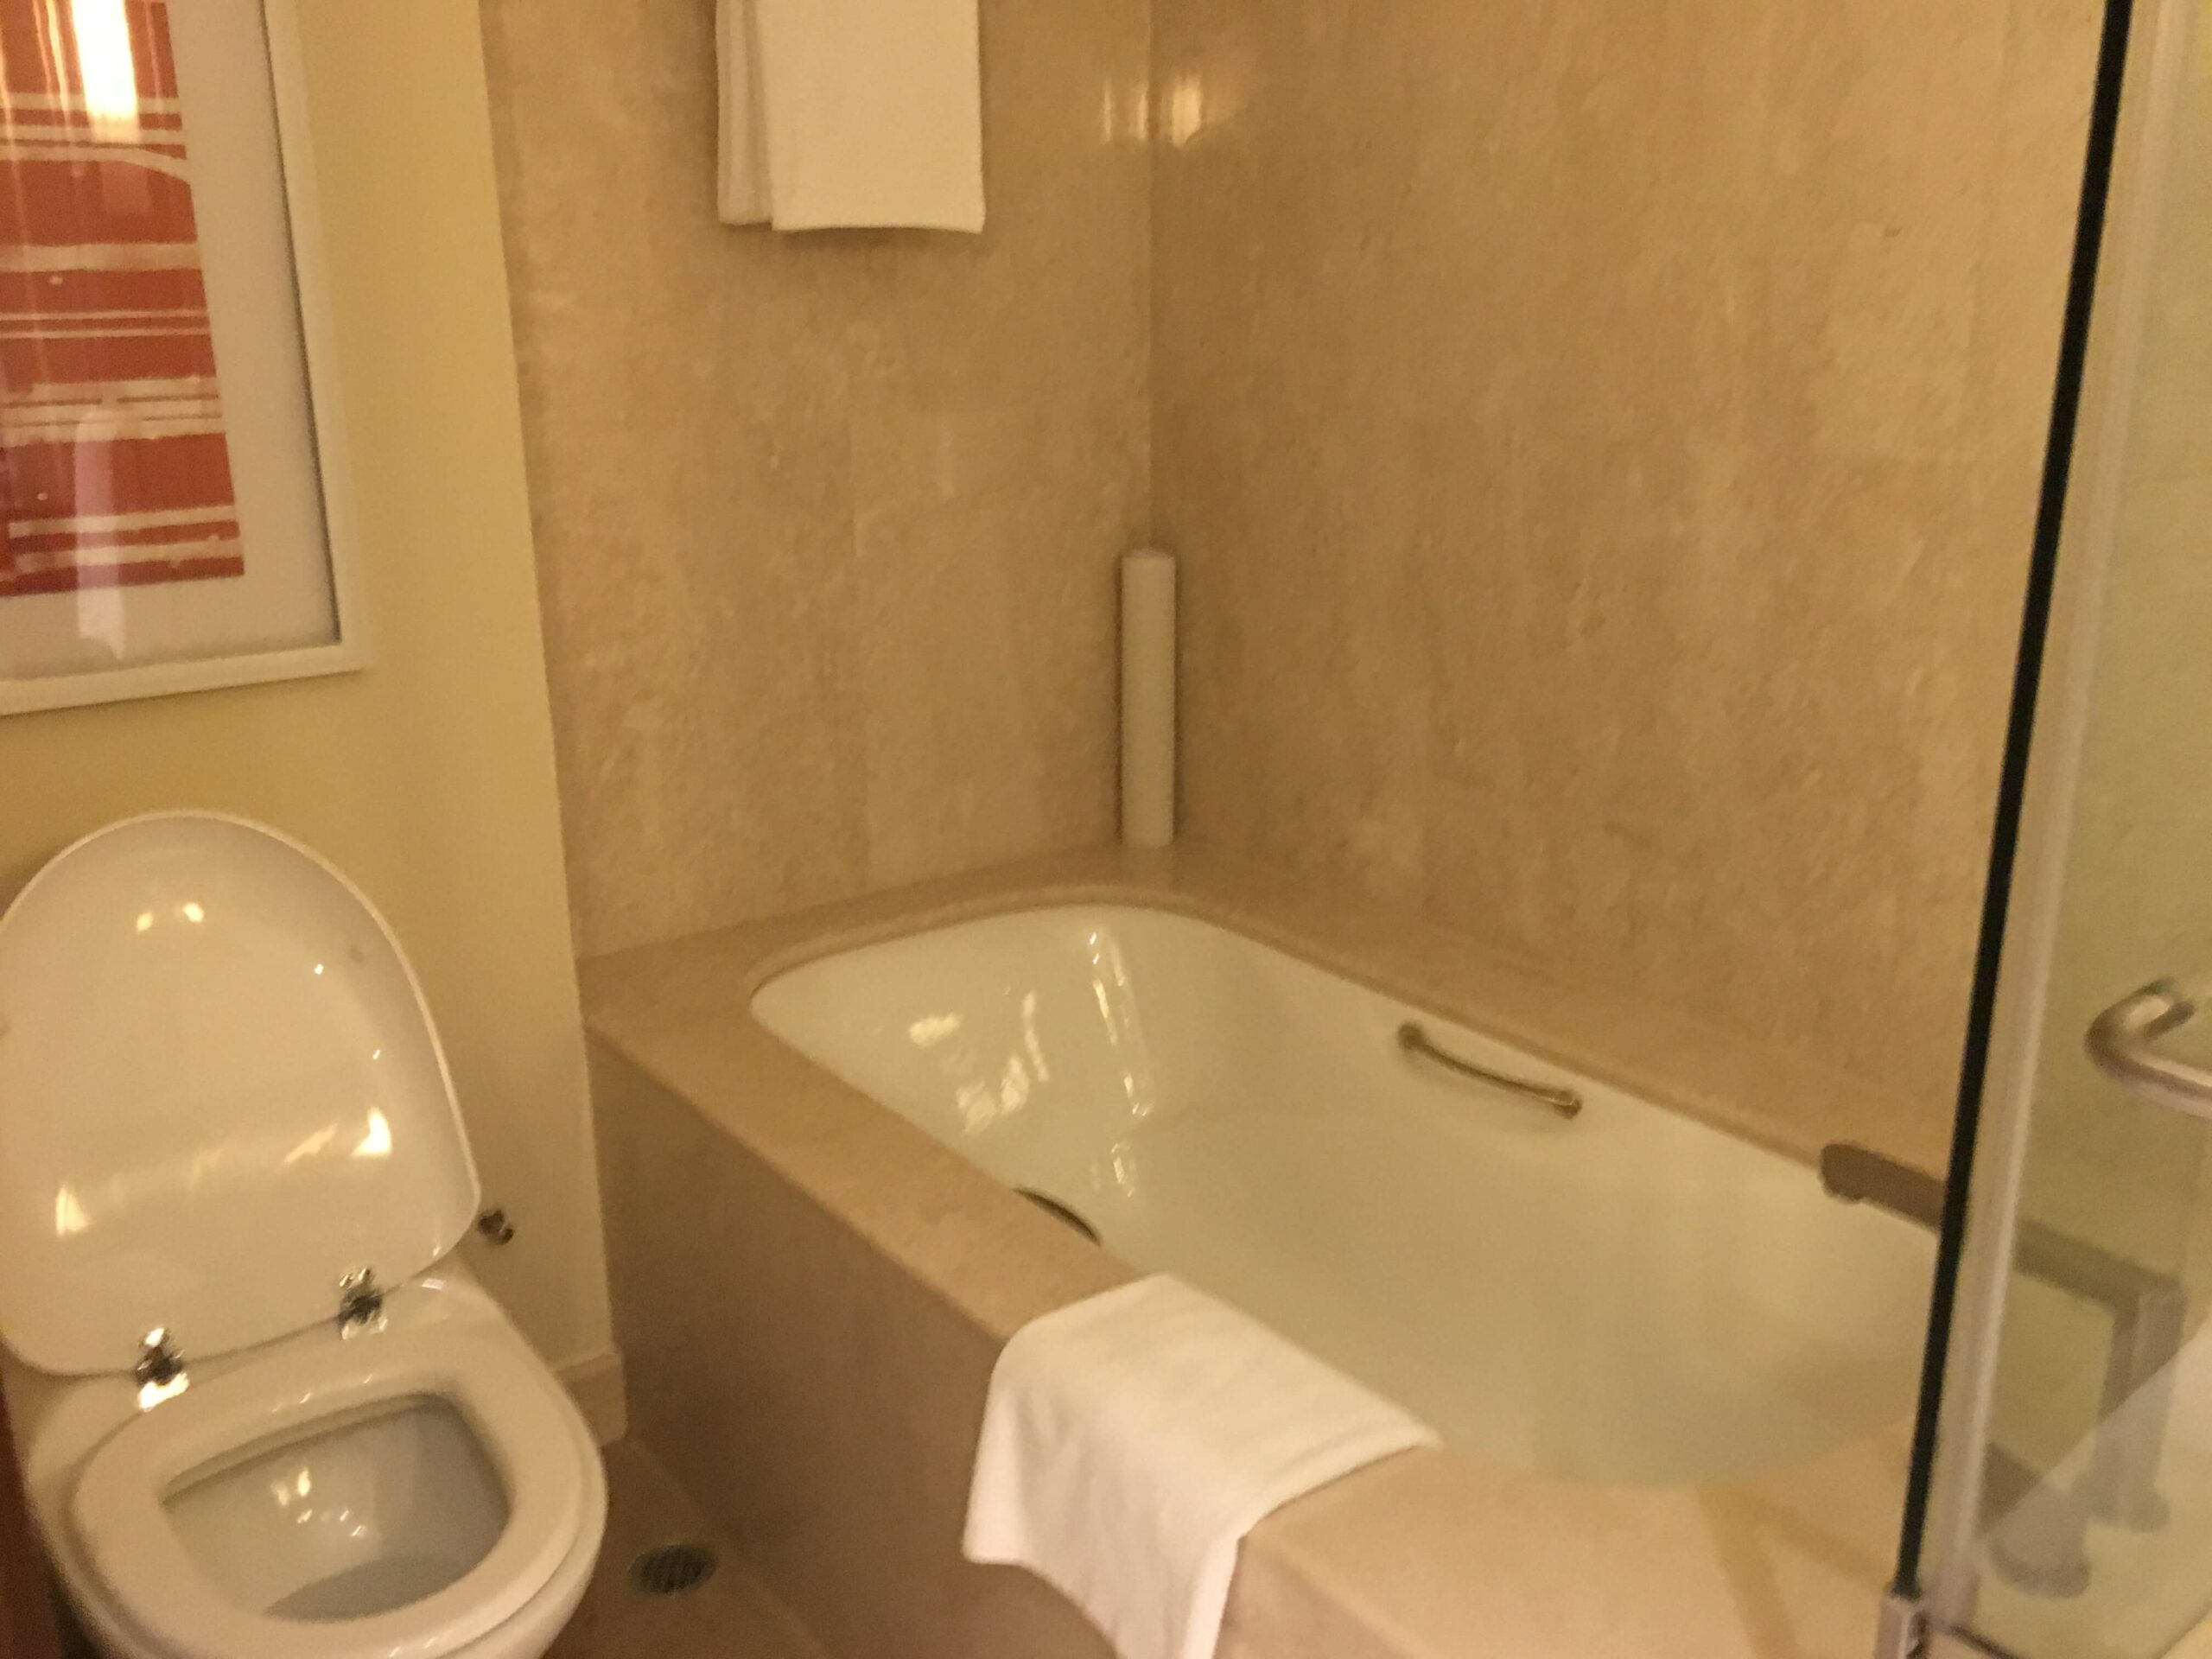 Holiday Inn Macau hotel bath tub scaled